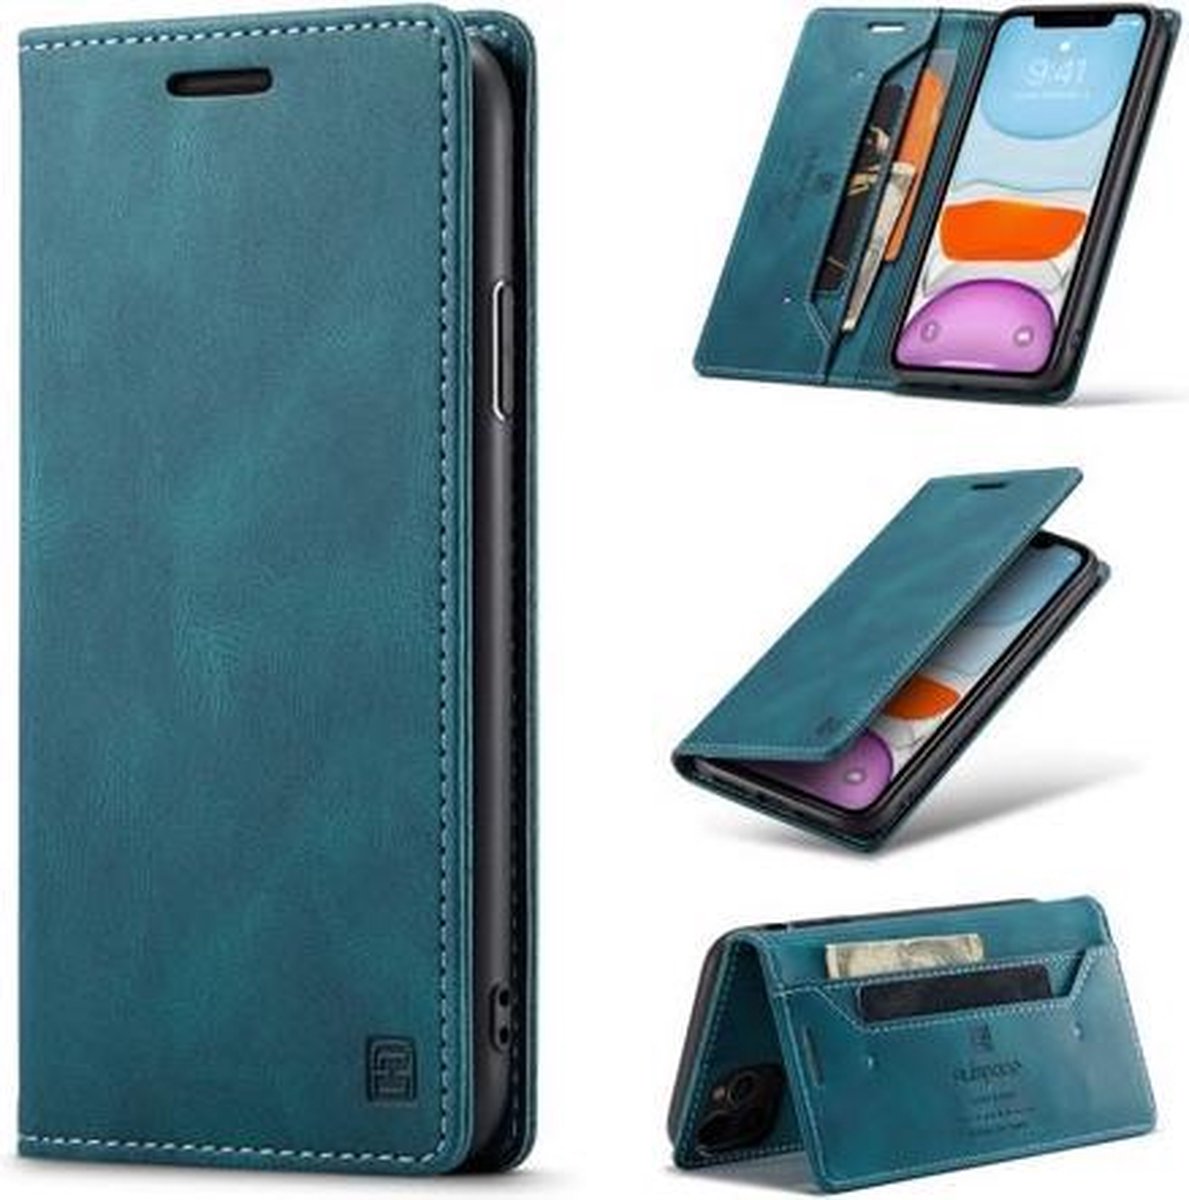 AutSpace - Hoesje geschikt voor iPhone 11 Pro Max - Wallet Book Case - Magneetsluiting - met RFID bescherming - Blauw